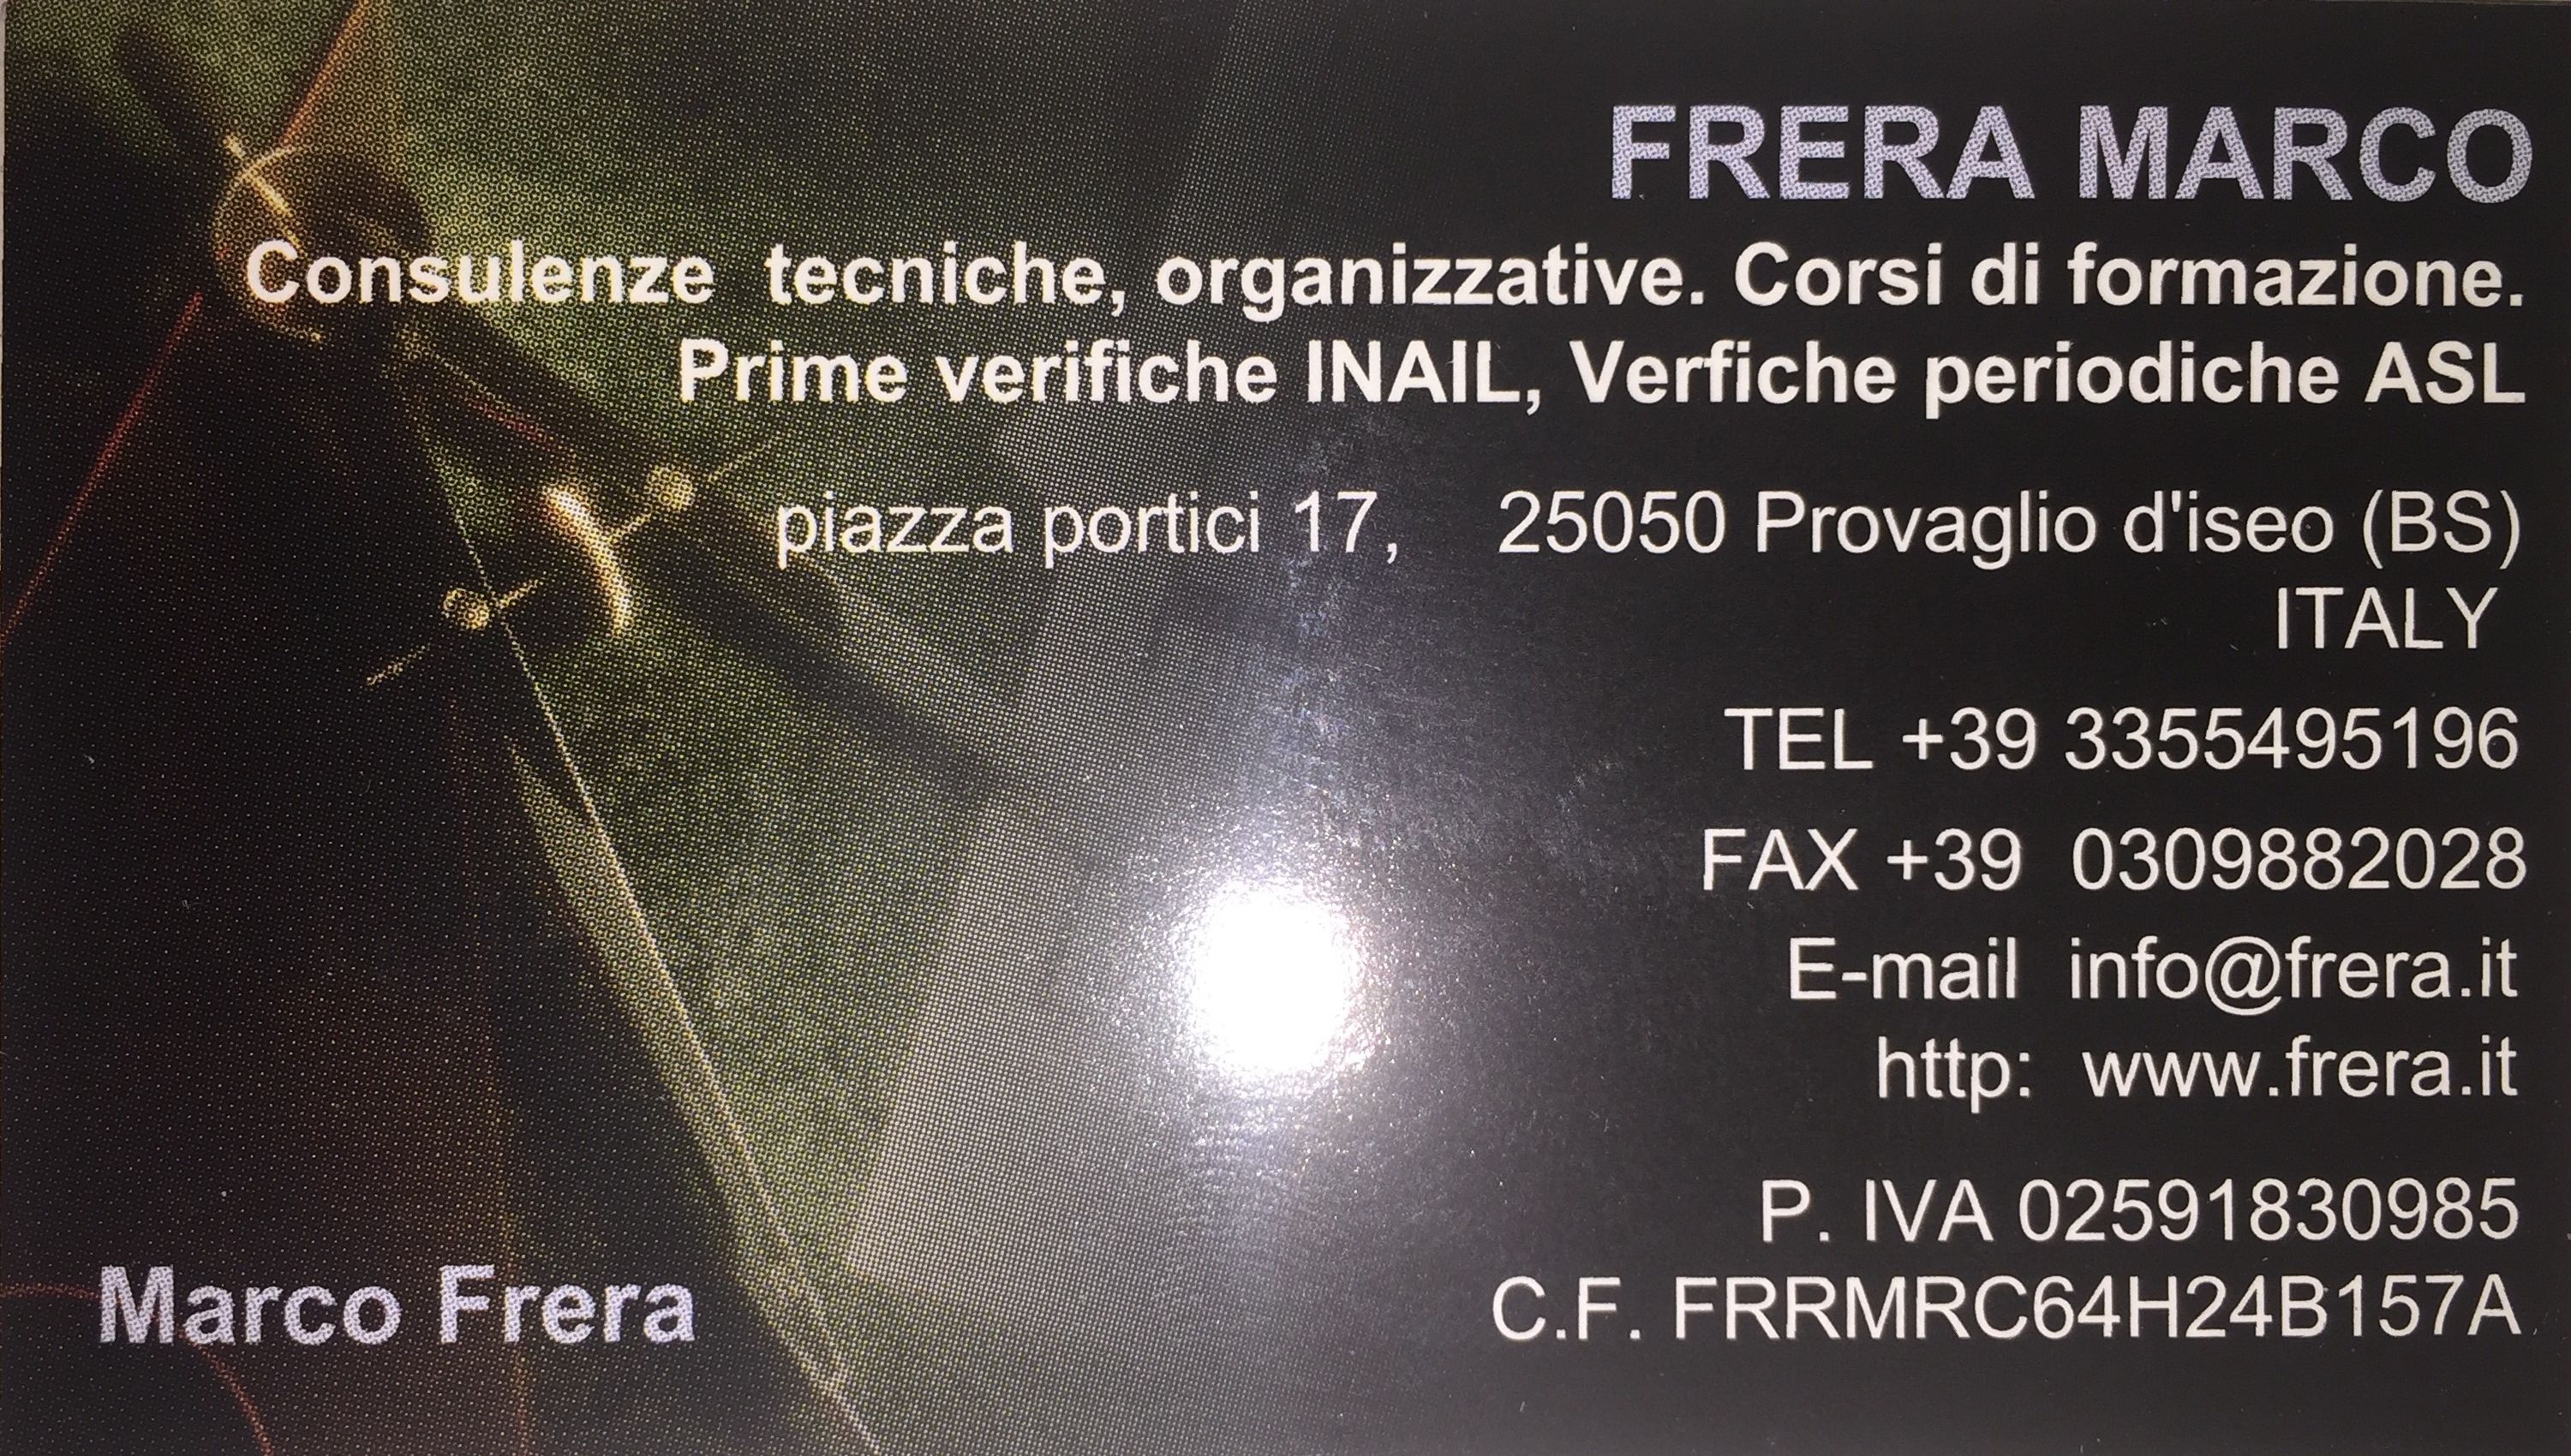 www.frera.it